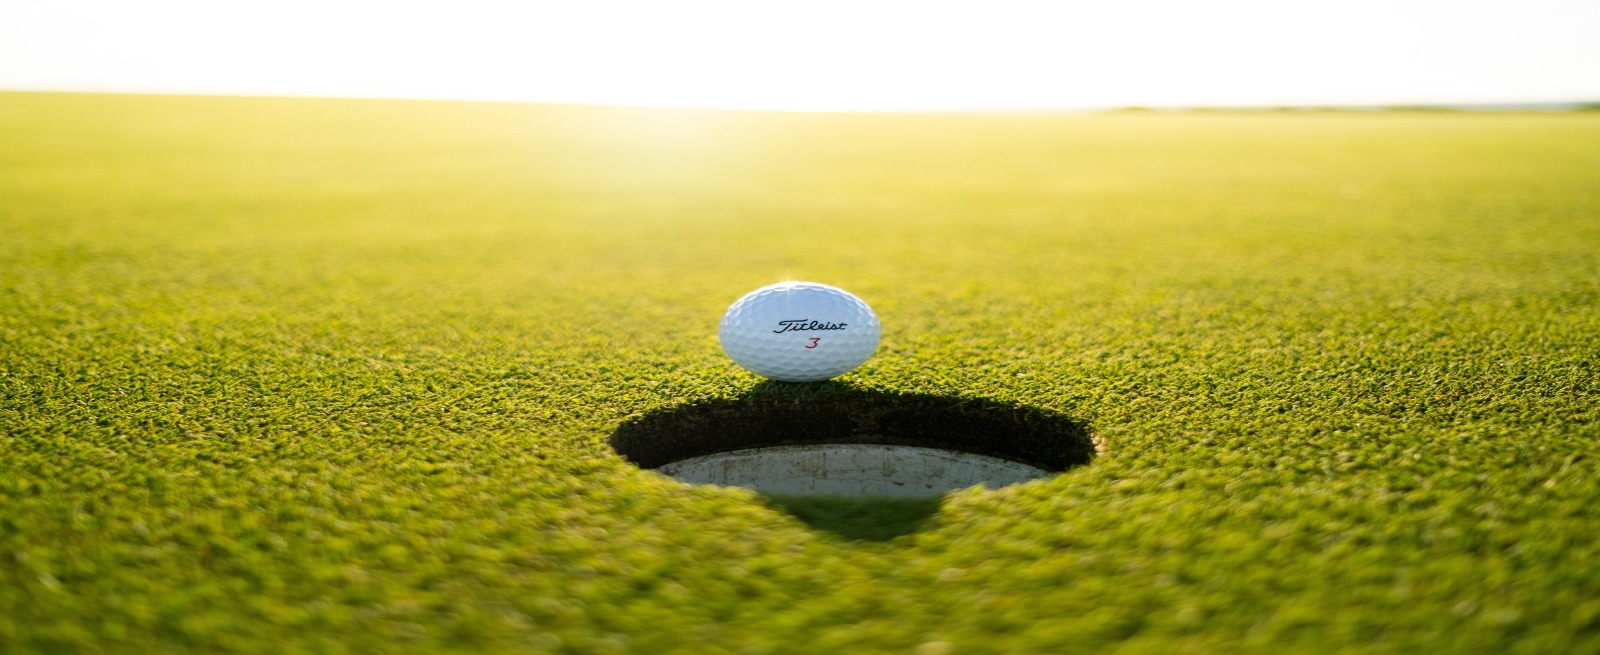 a golf ball on a golf green